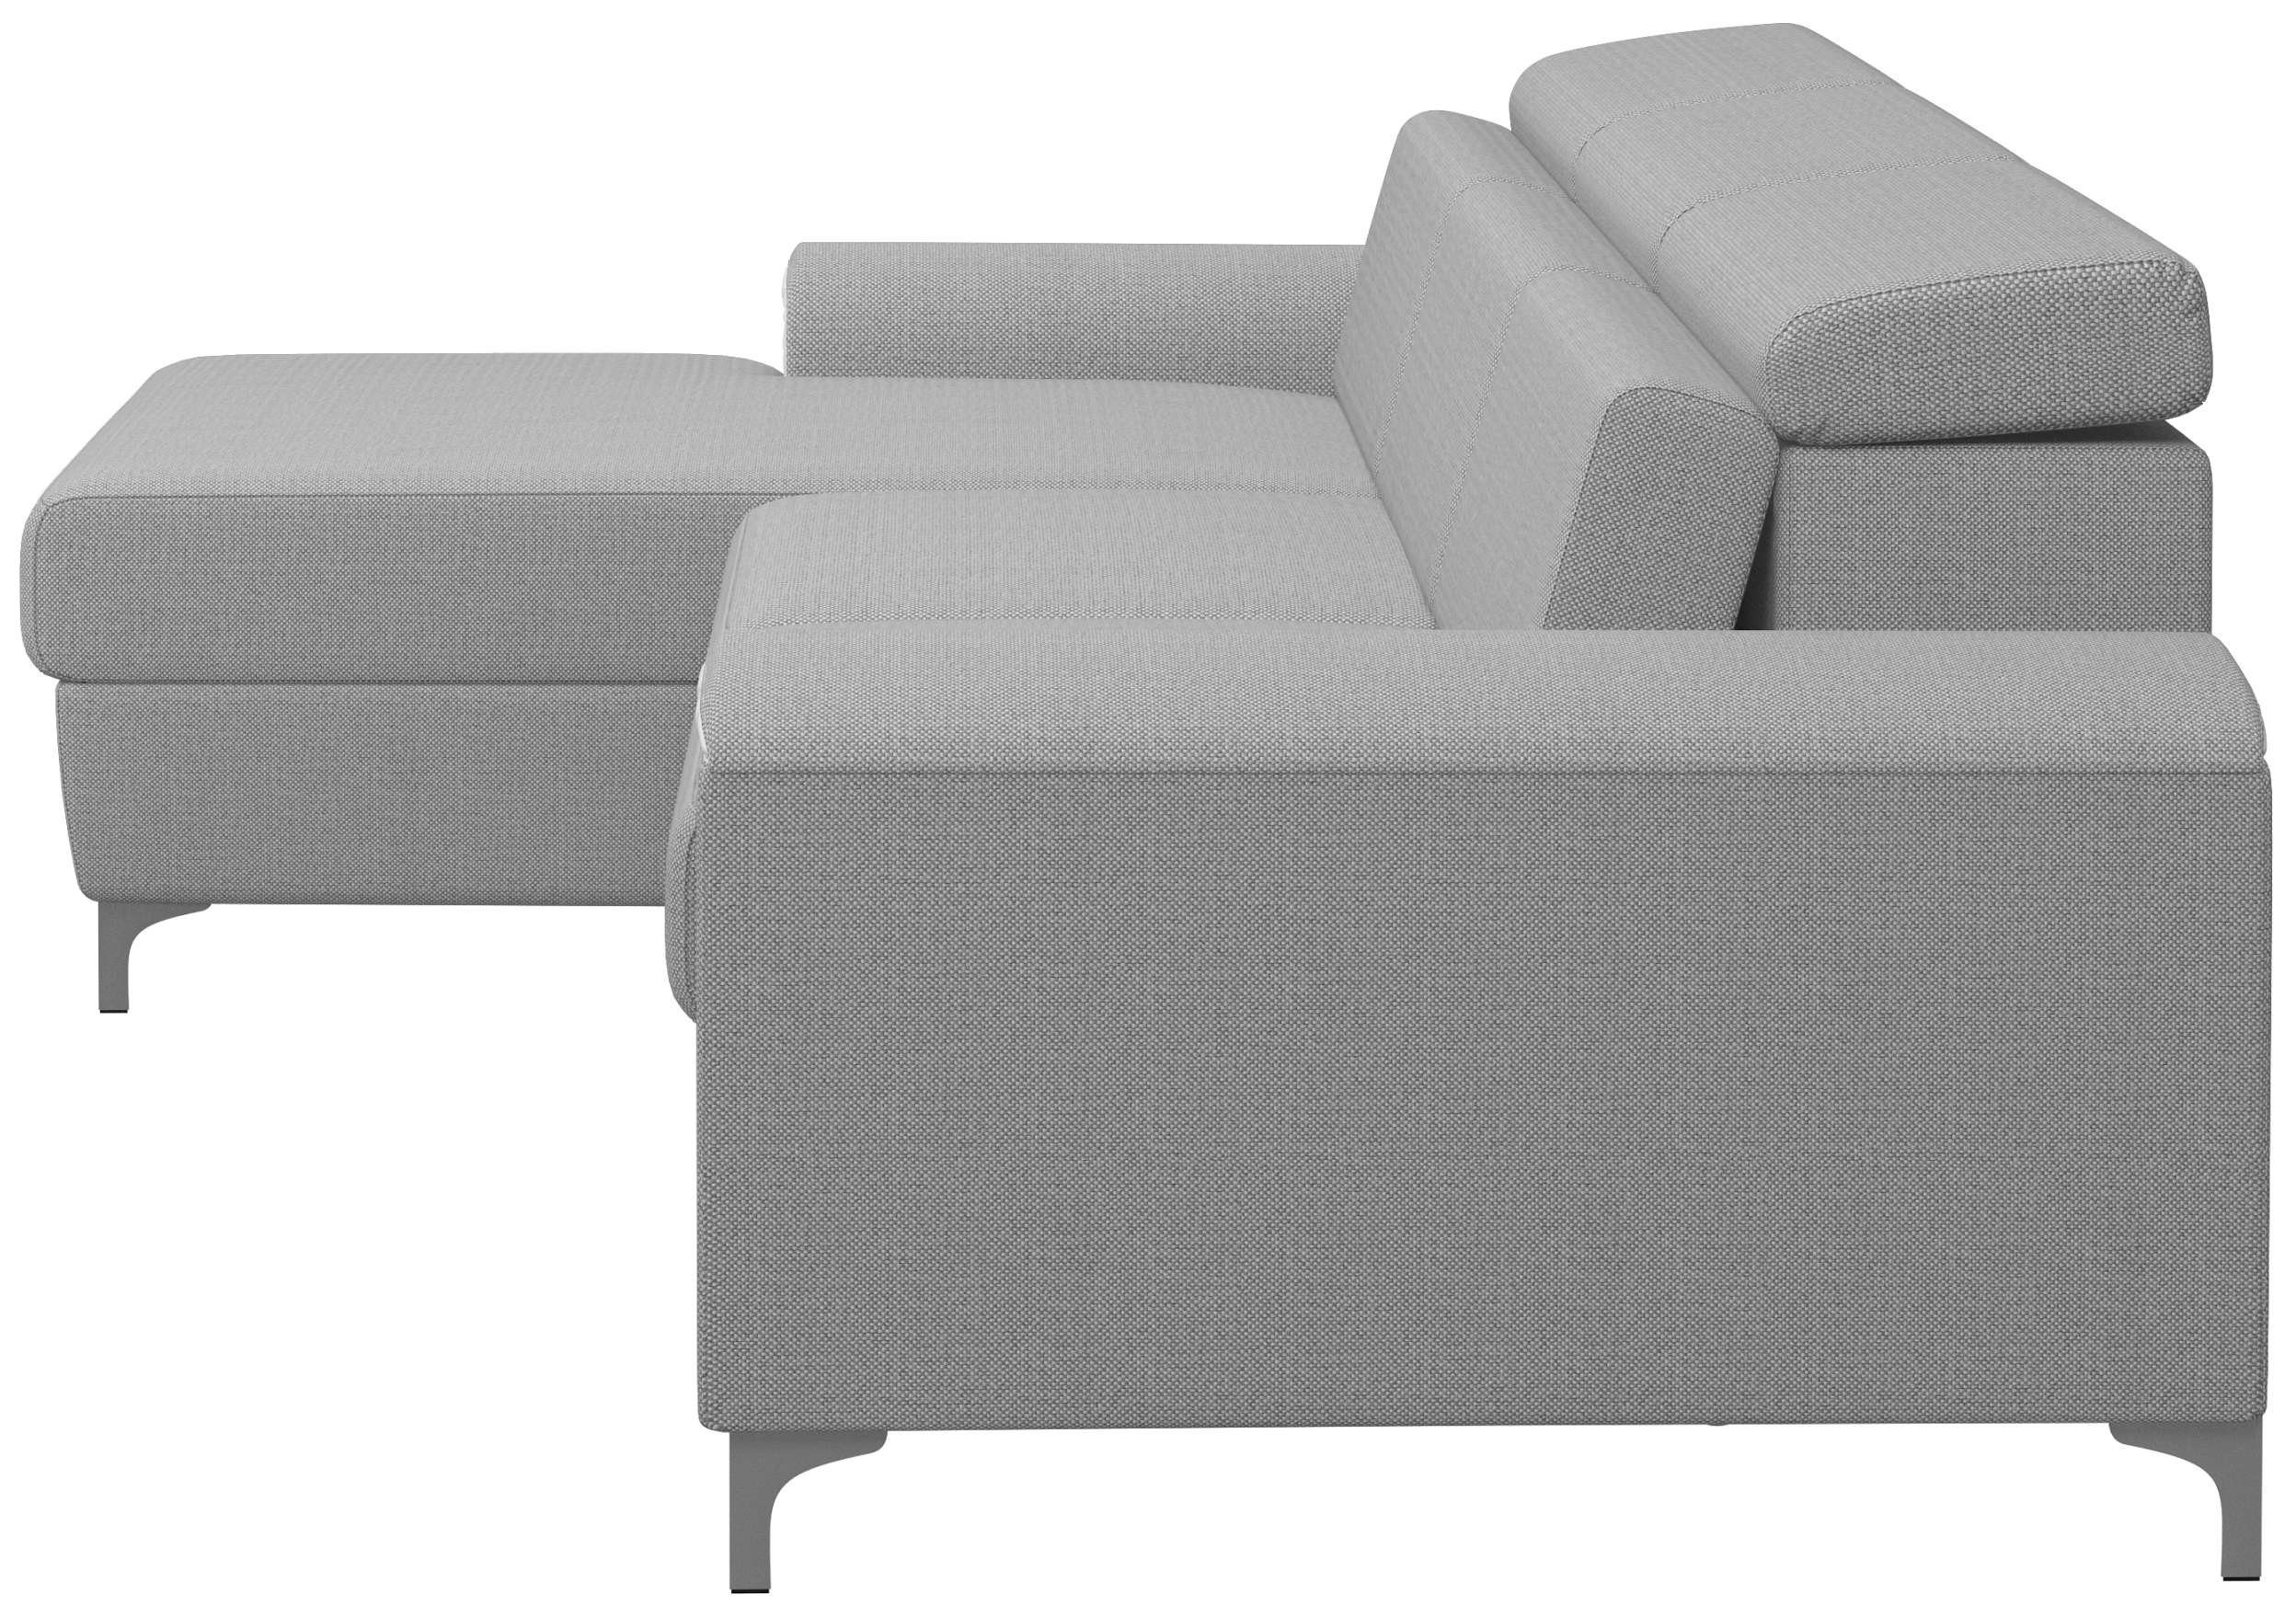 Sitzkomfort, Ecksofa mane Lino, Eckcouch, und L-Form, Raum stellbar, inklusive im Stylefy Bettkasten Bettfunktion, links rechts mit bestellbar, Kopfteilverstellung oder frei